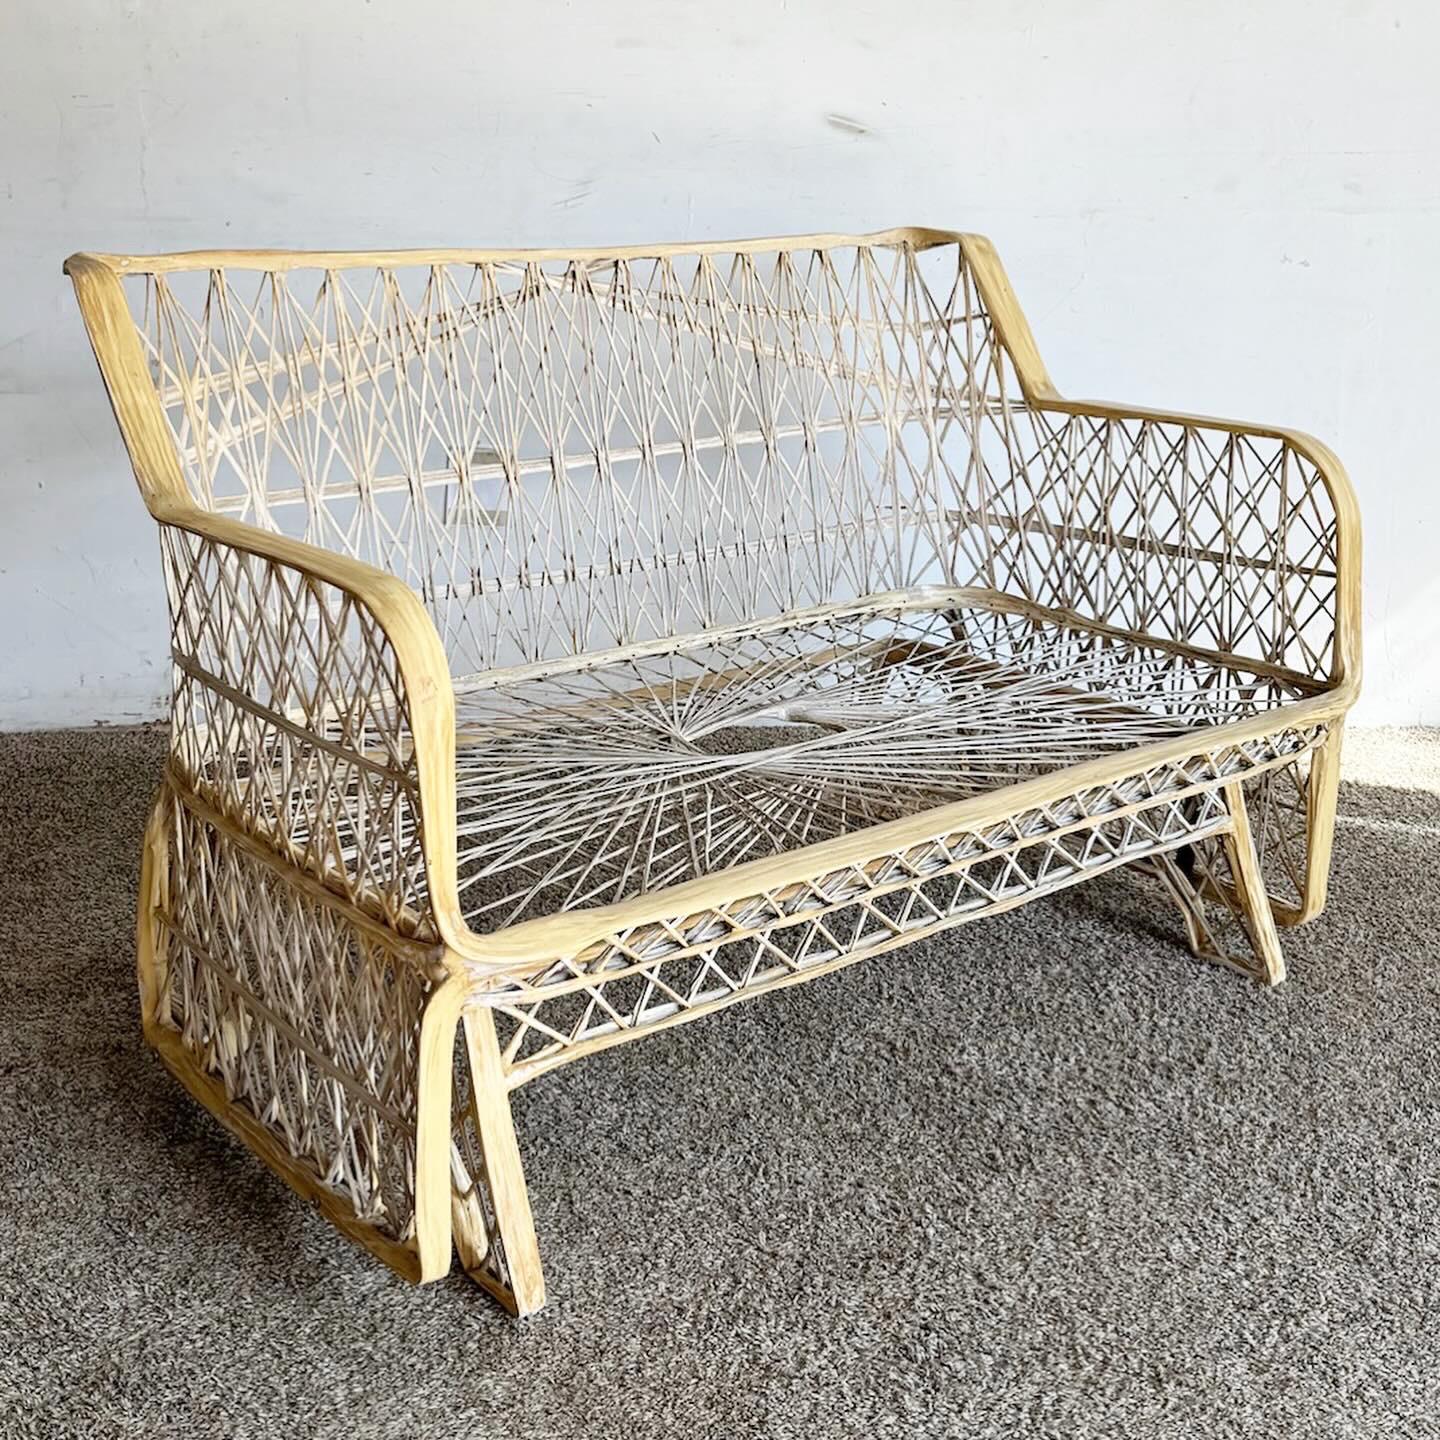 Le fauteuil à bascule Russell Woodard en fibre de verre filée, de style moderne du milieu du siècle, est un mélange de flair artistique et de confort. Son motif en fibre de verre en forme de toile offre une intrigue visuelle et une grande